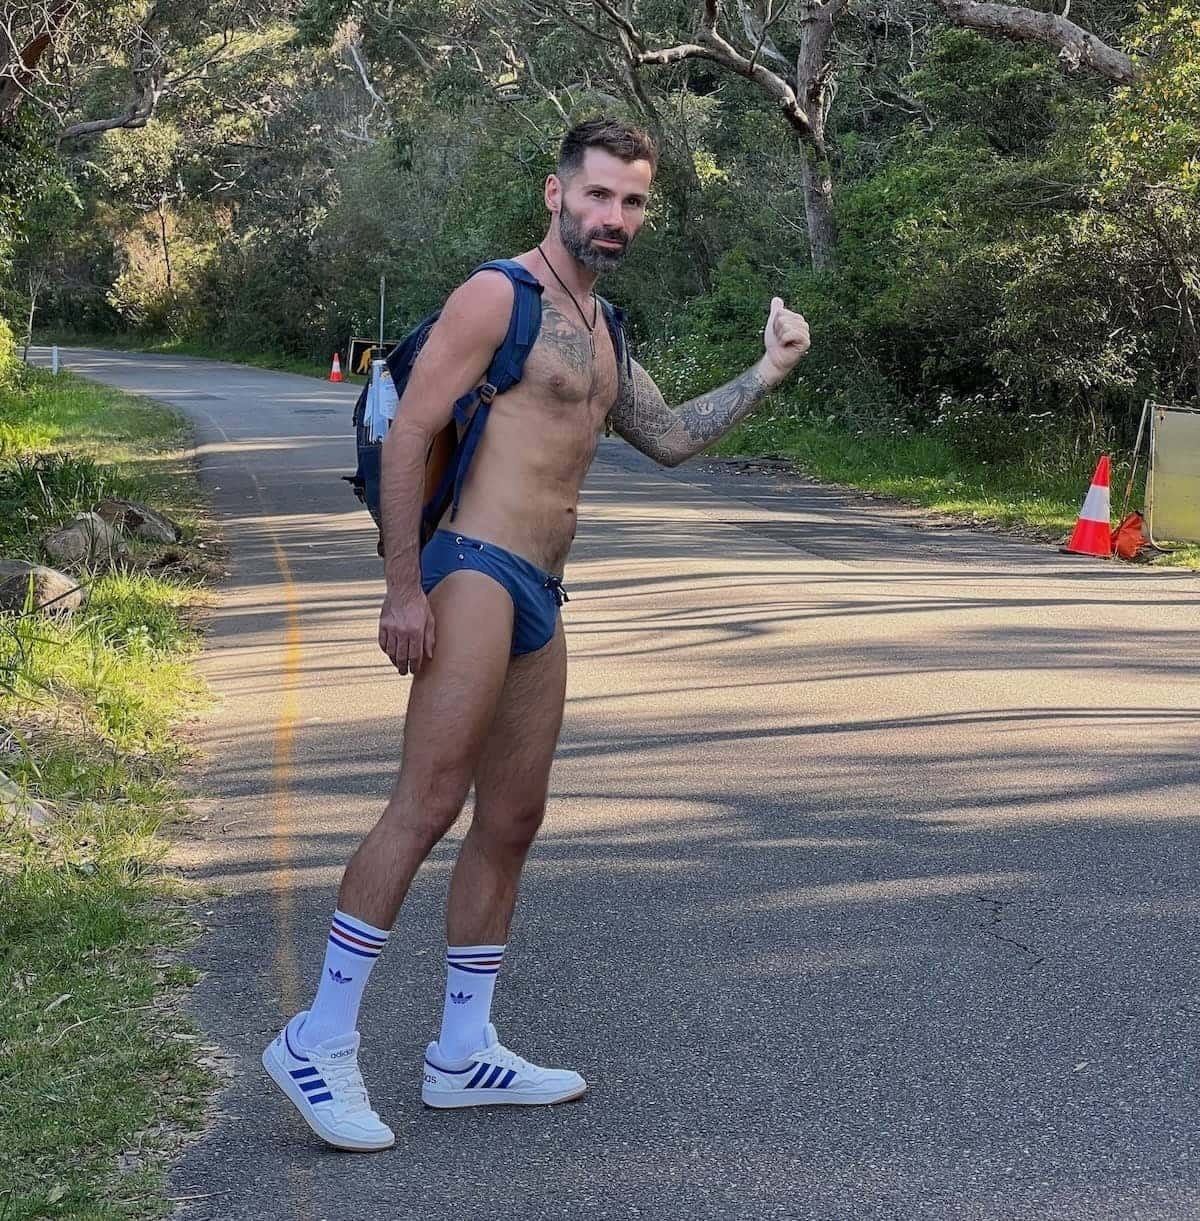 Seby hitch hiking at Sydney gay Obelisk beach wearing Teamm8 gay underwear.